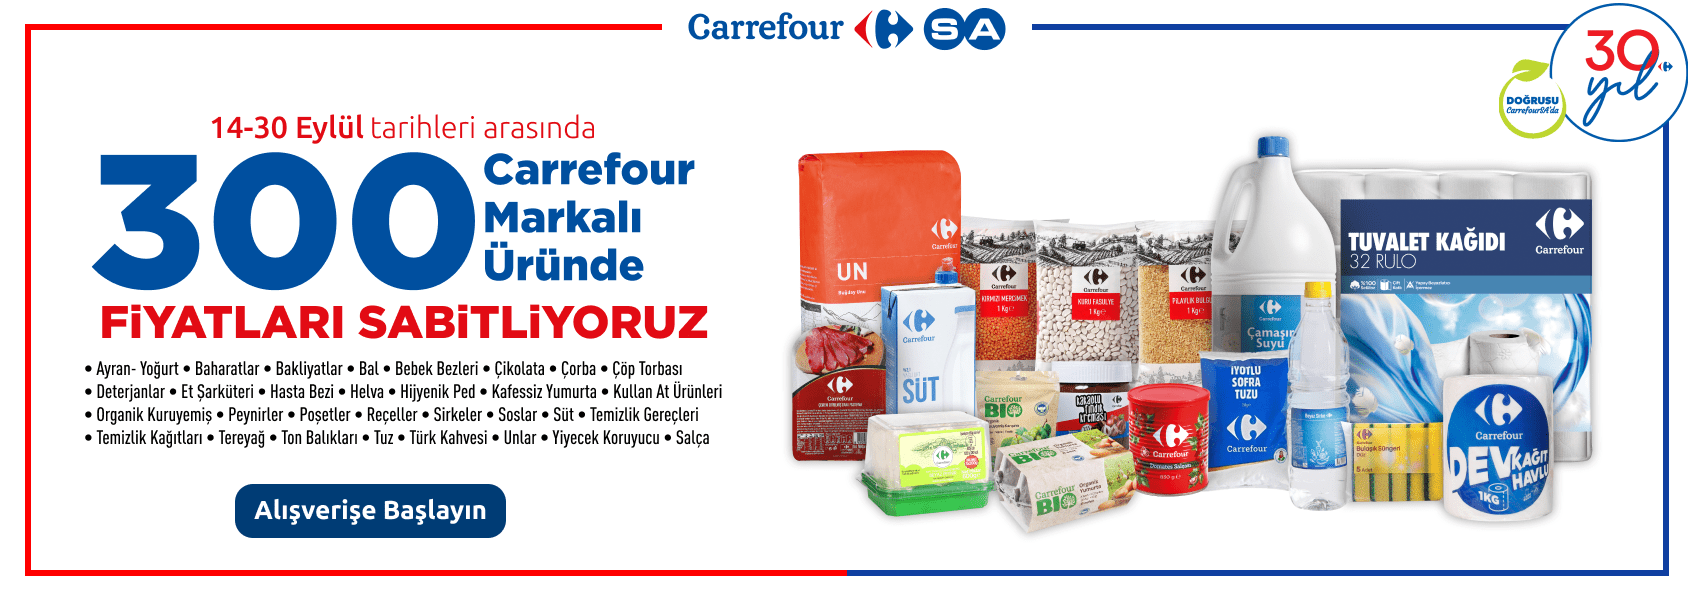 Carrefour Marka Ürünlerde Fiyatları Sabitliyoruz